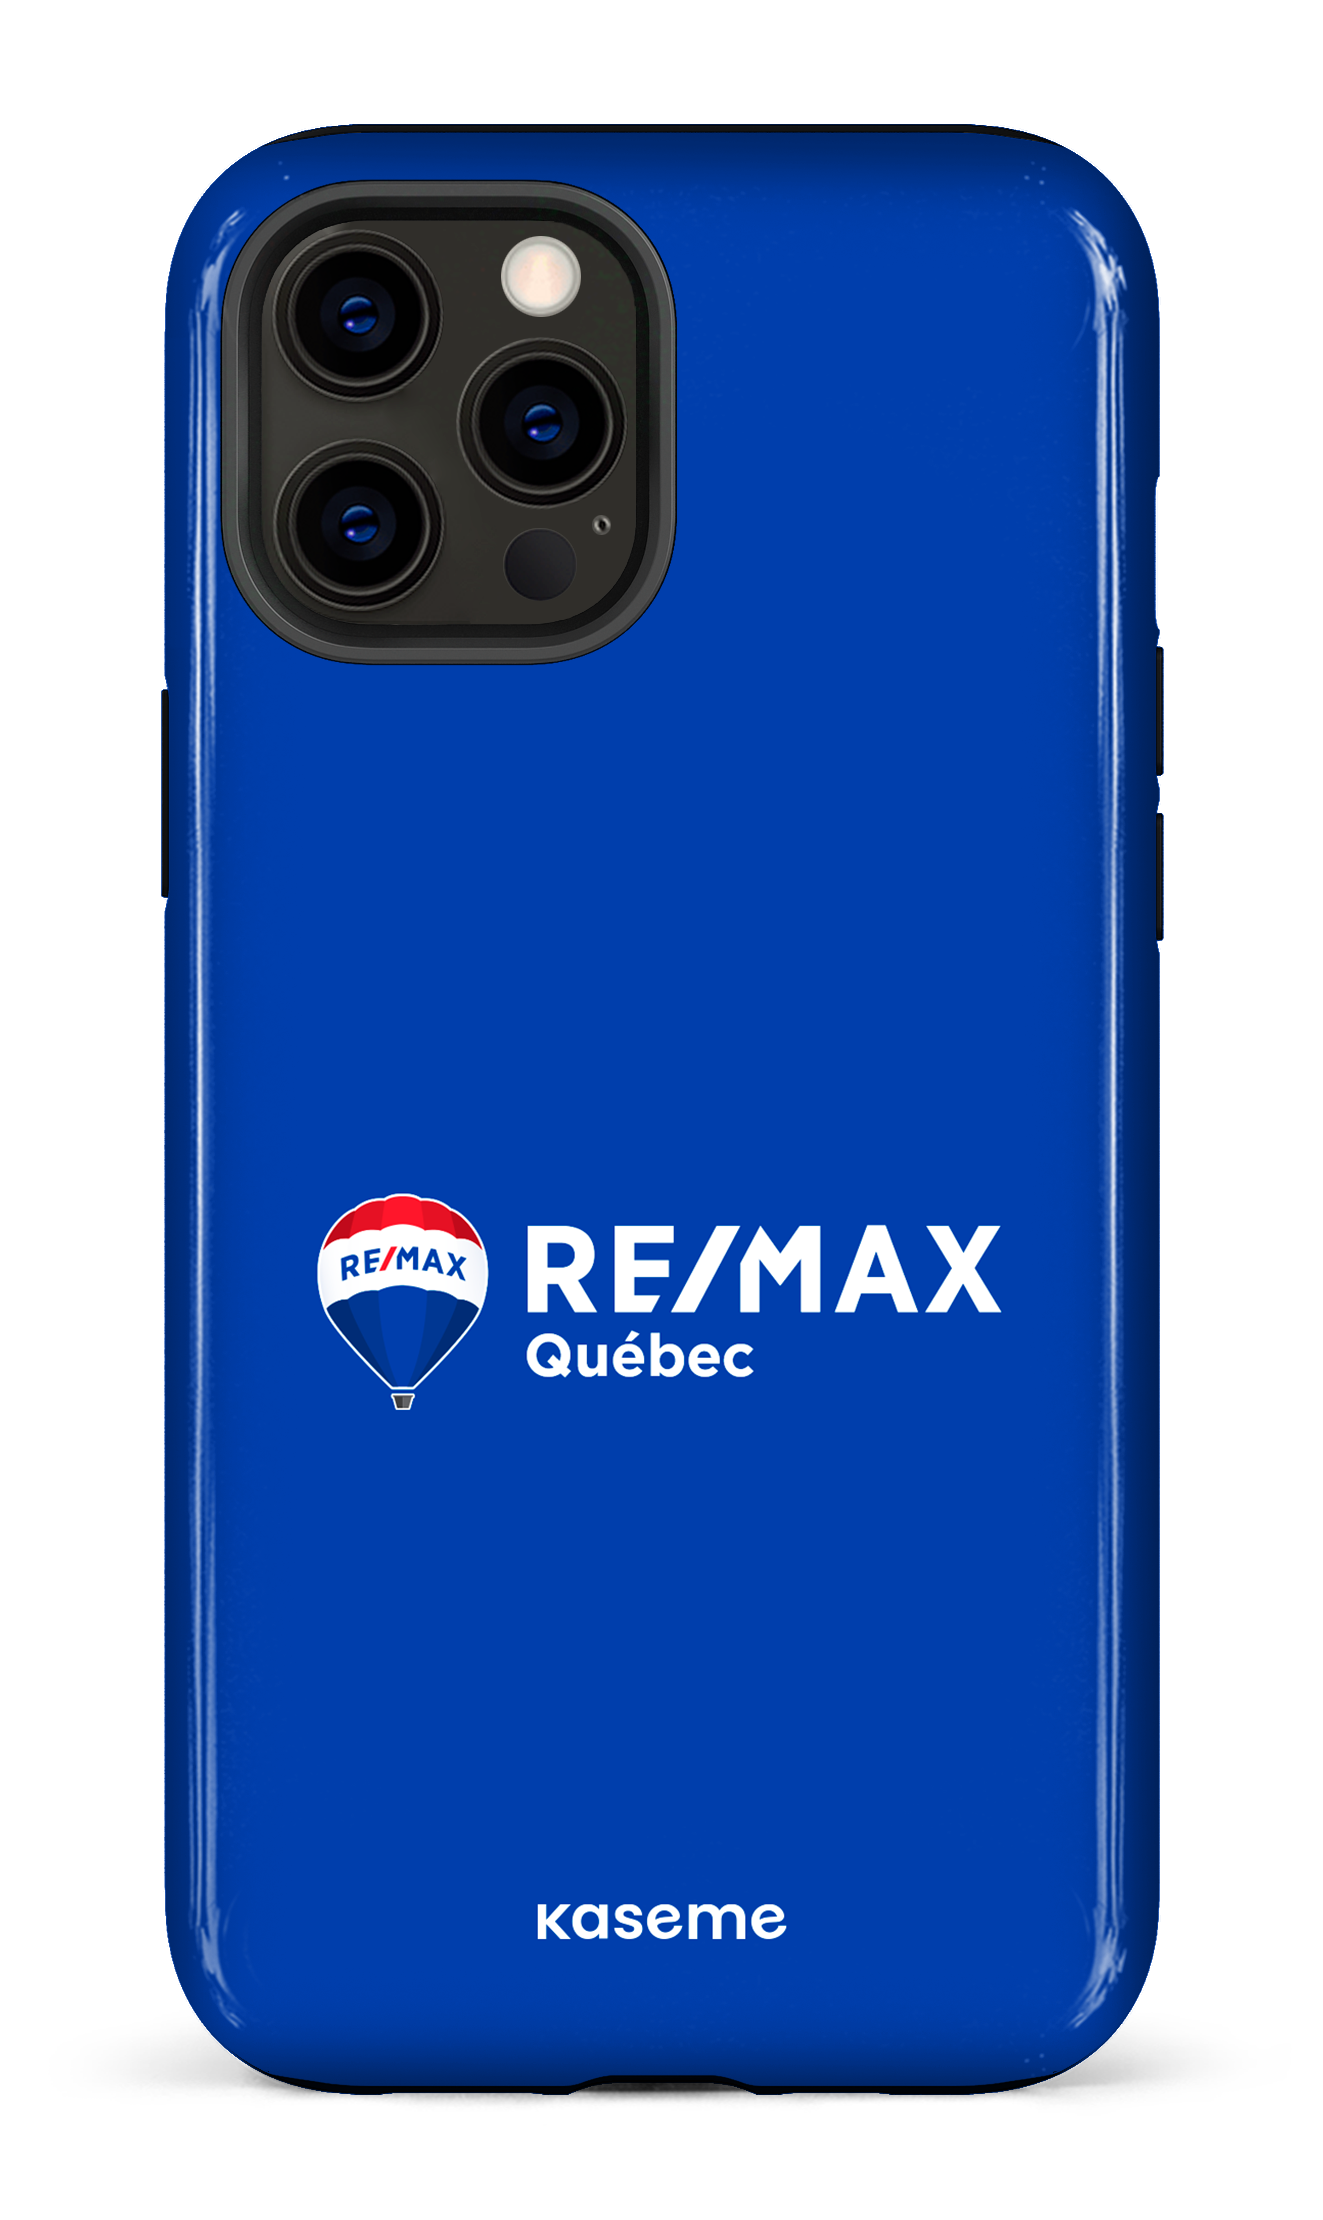 Remax Québec Bleu - iPhone 12 Pro Max